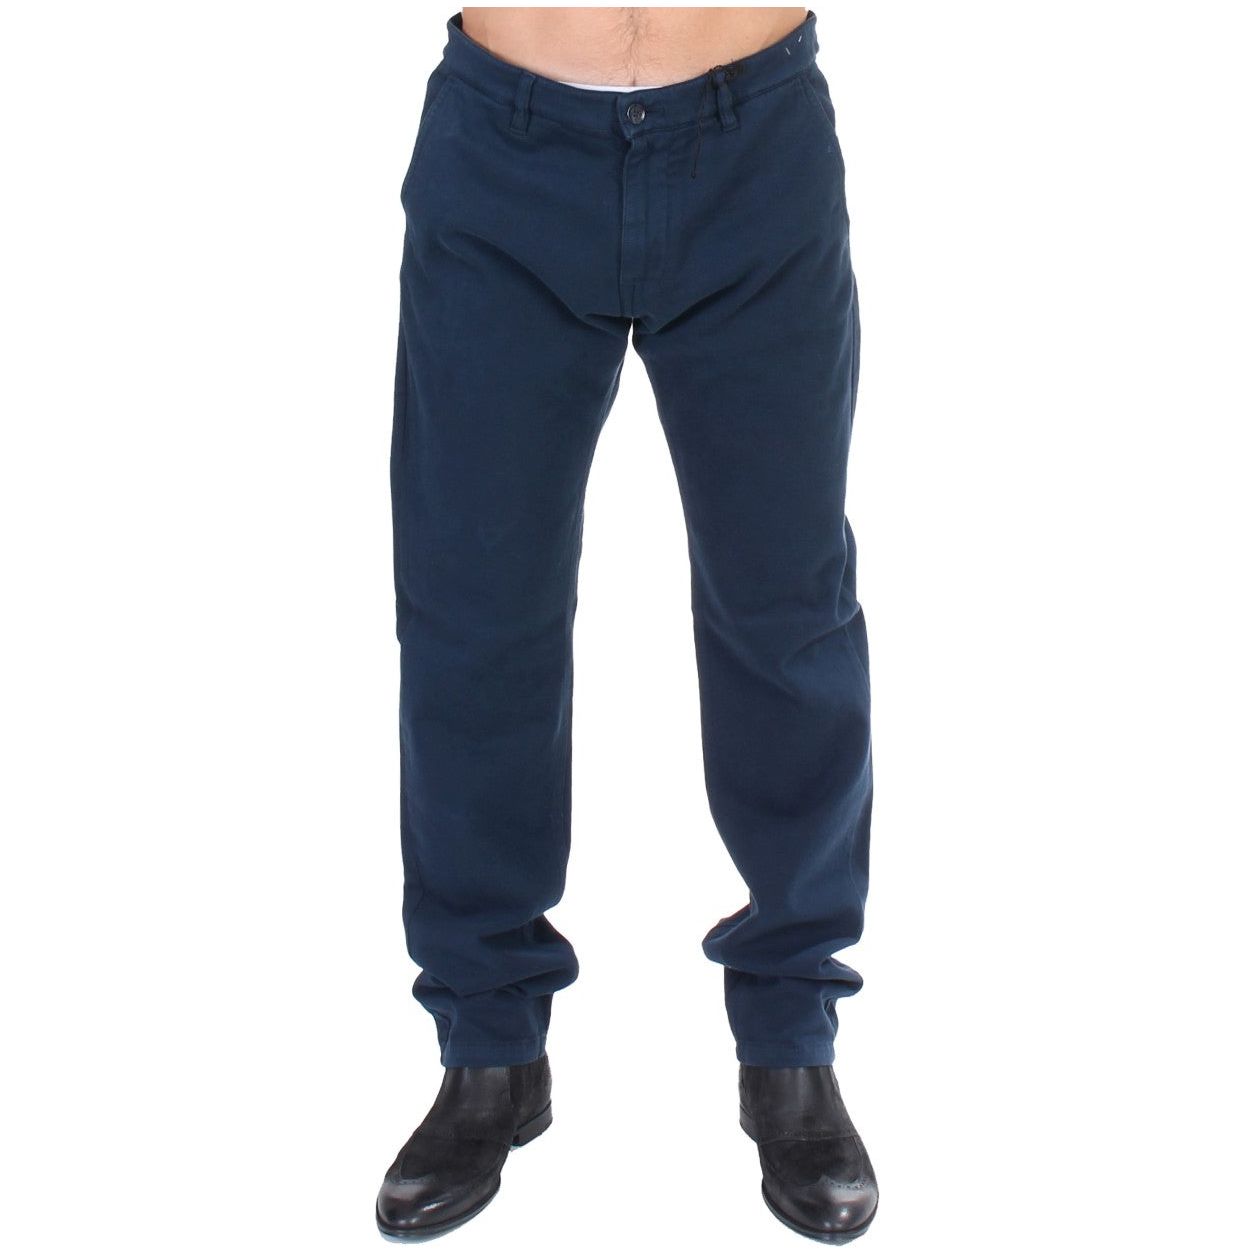 GF Ferre Elegant Blue Cotton Stretch Chinos blue-stretch-straight-fit-pants-chinos 53409-blue-stretch-straight-fit-pants-chinos.jpg